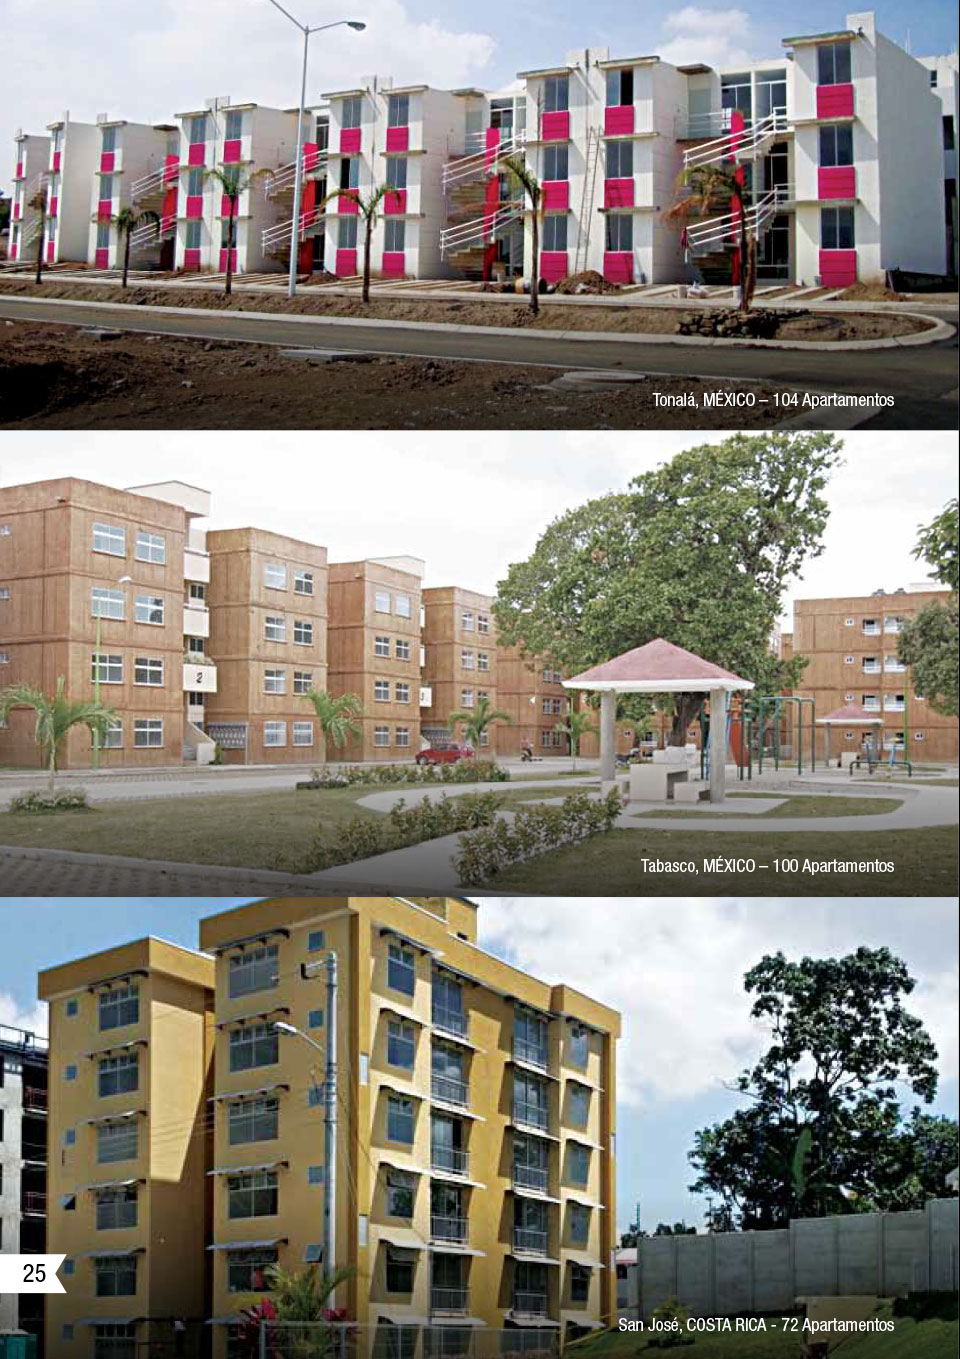 Una imagen que muestra algunos de los proyectos de CEMEX utilizando la solución de vivienda vertical.